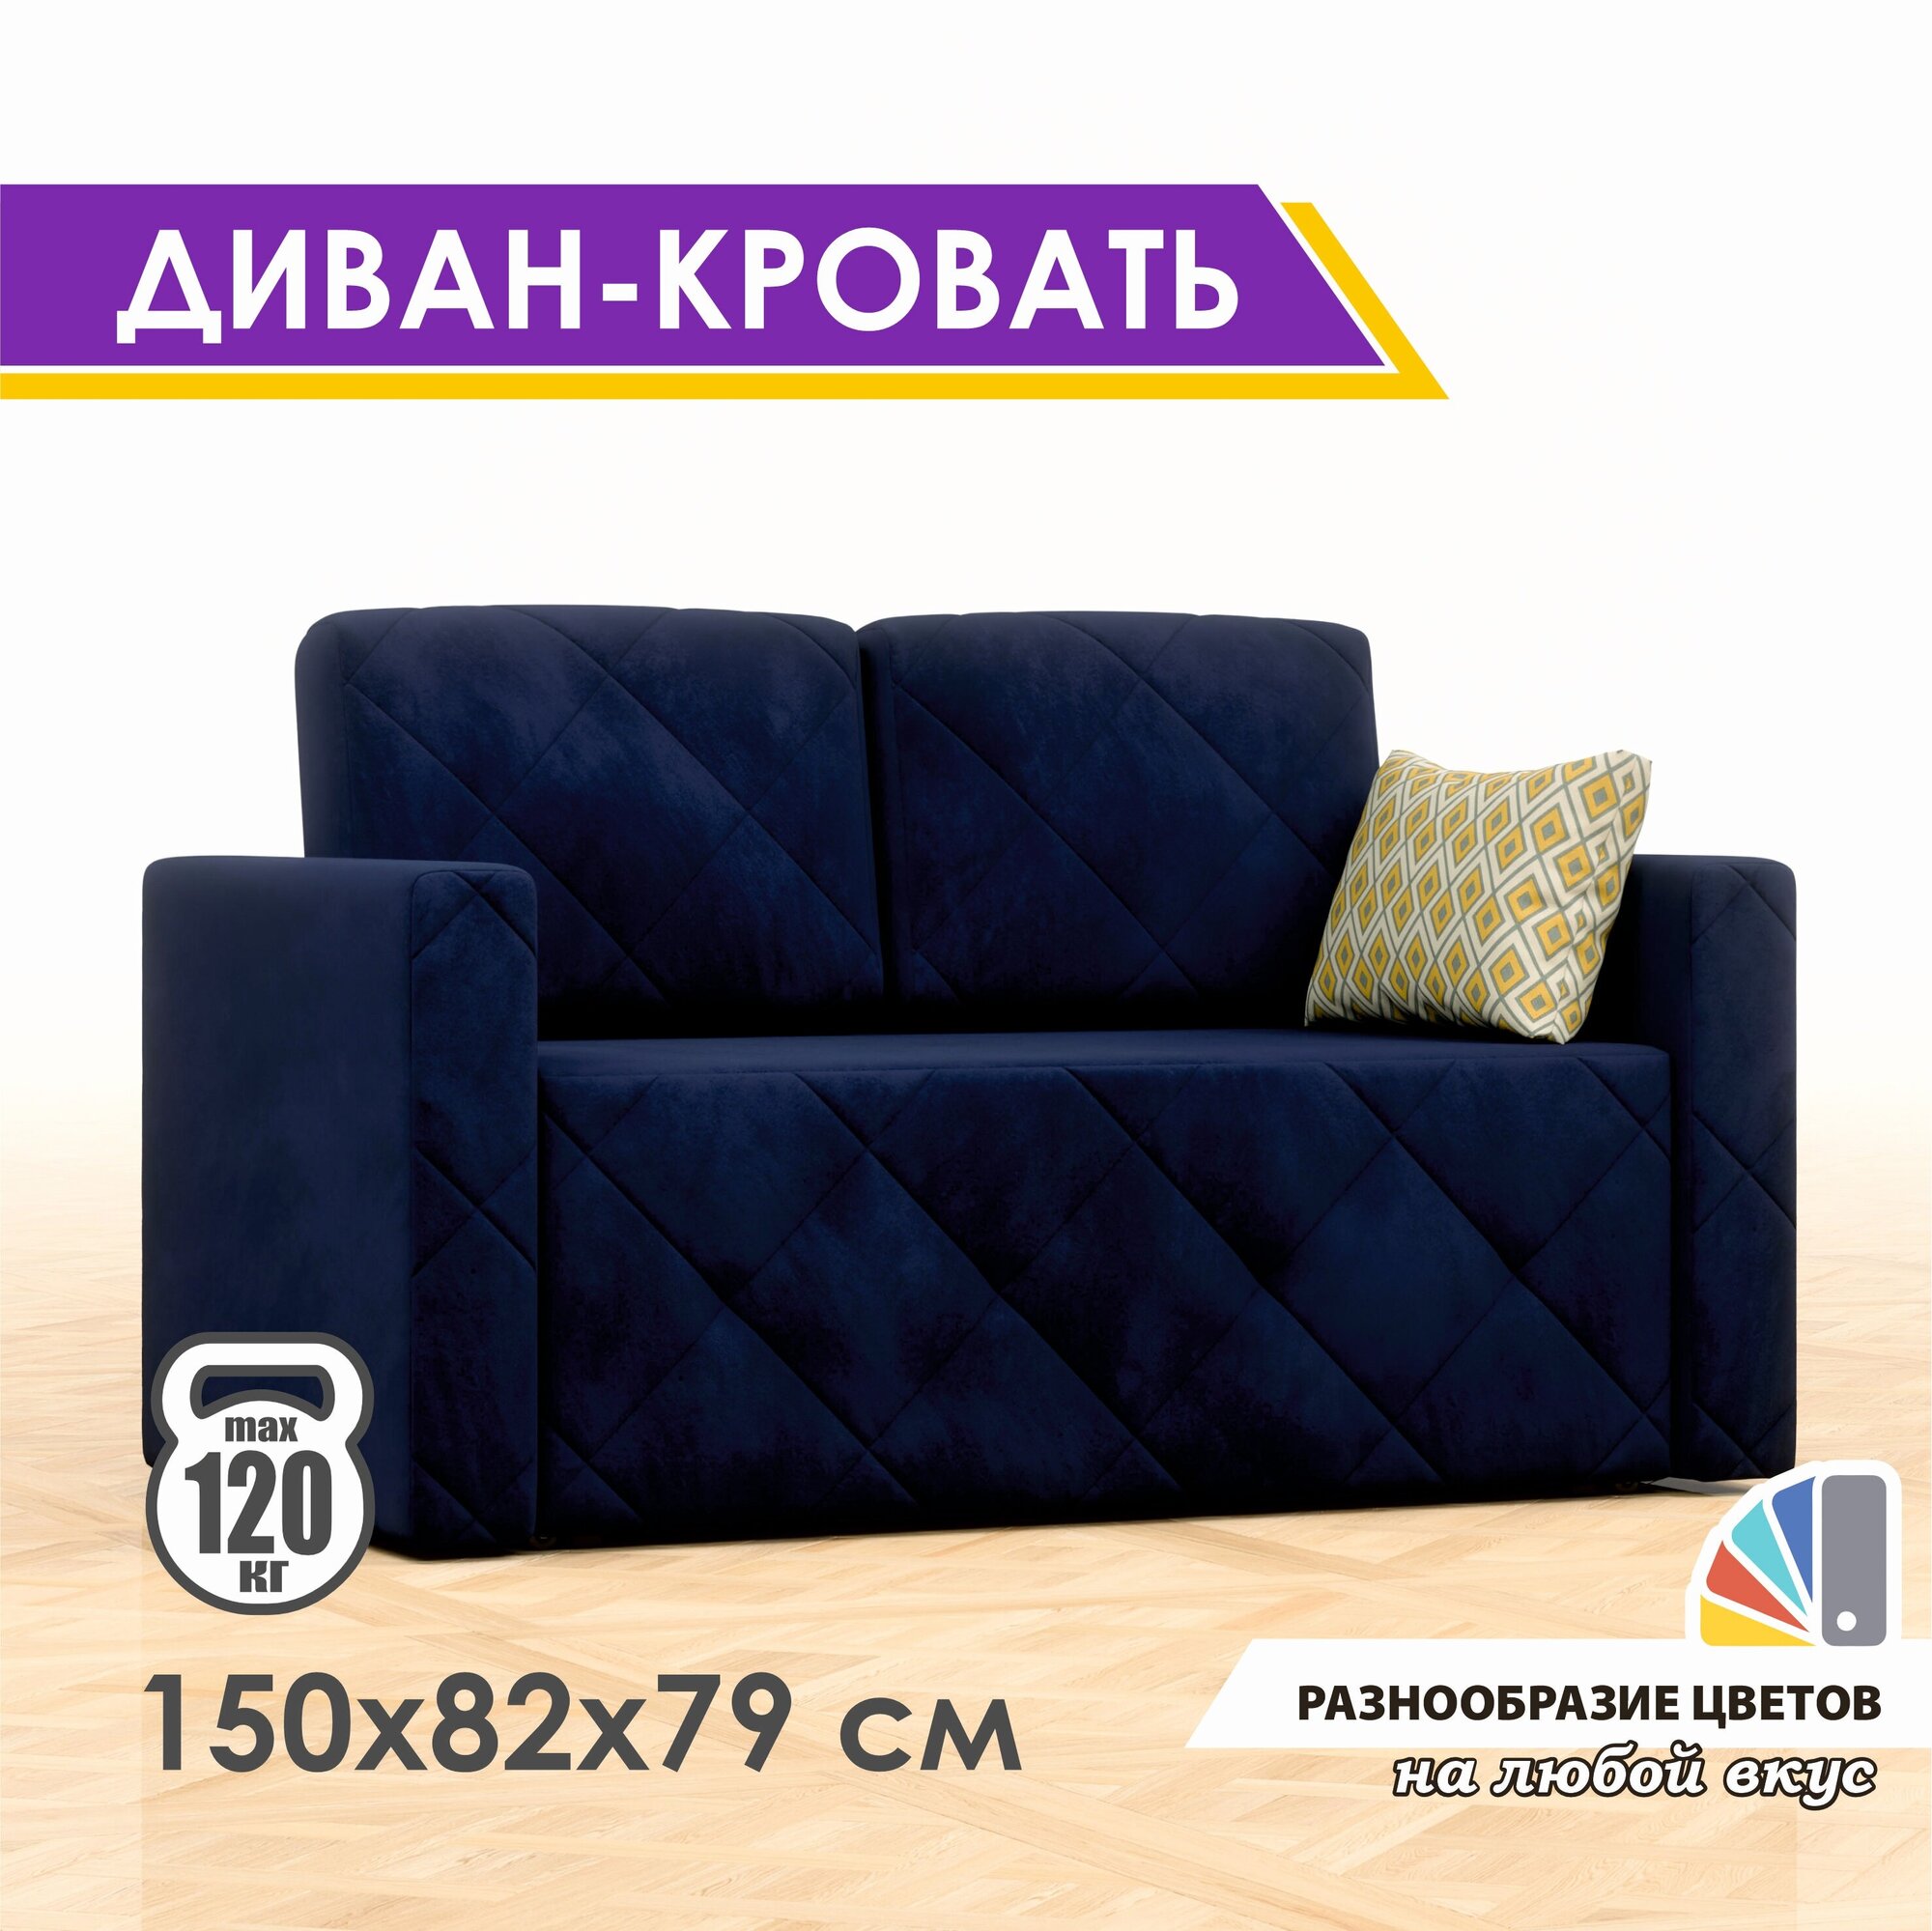 Раскладной диван-кровать GOSTIN Luxor 120х79х82, выкатной диван трансформер для кухни, детский диван, Velutto26